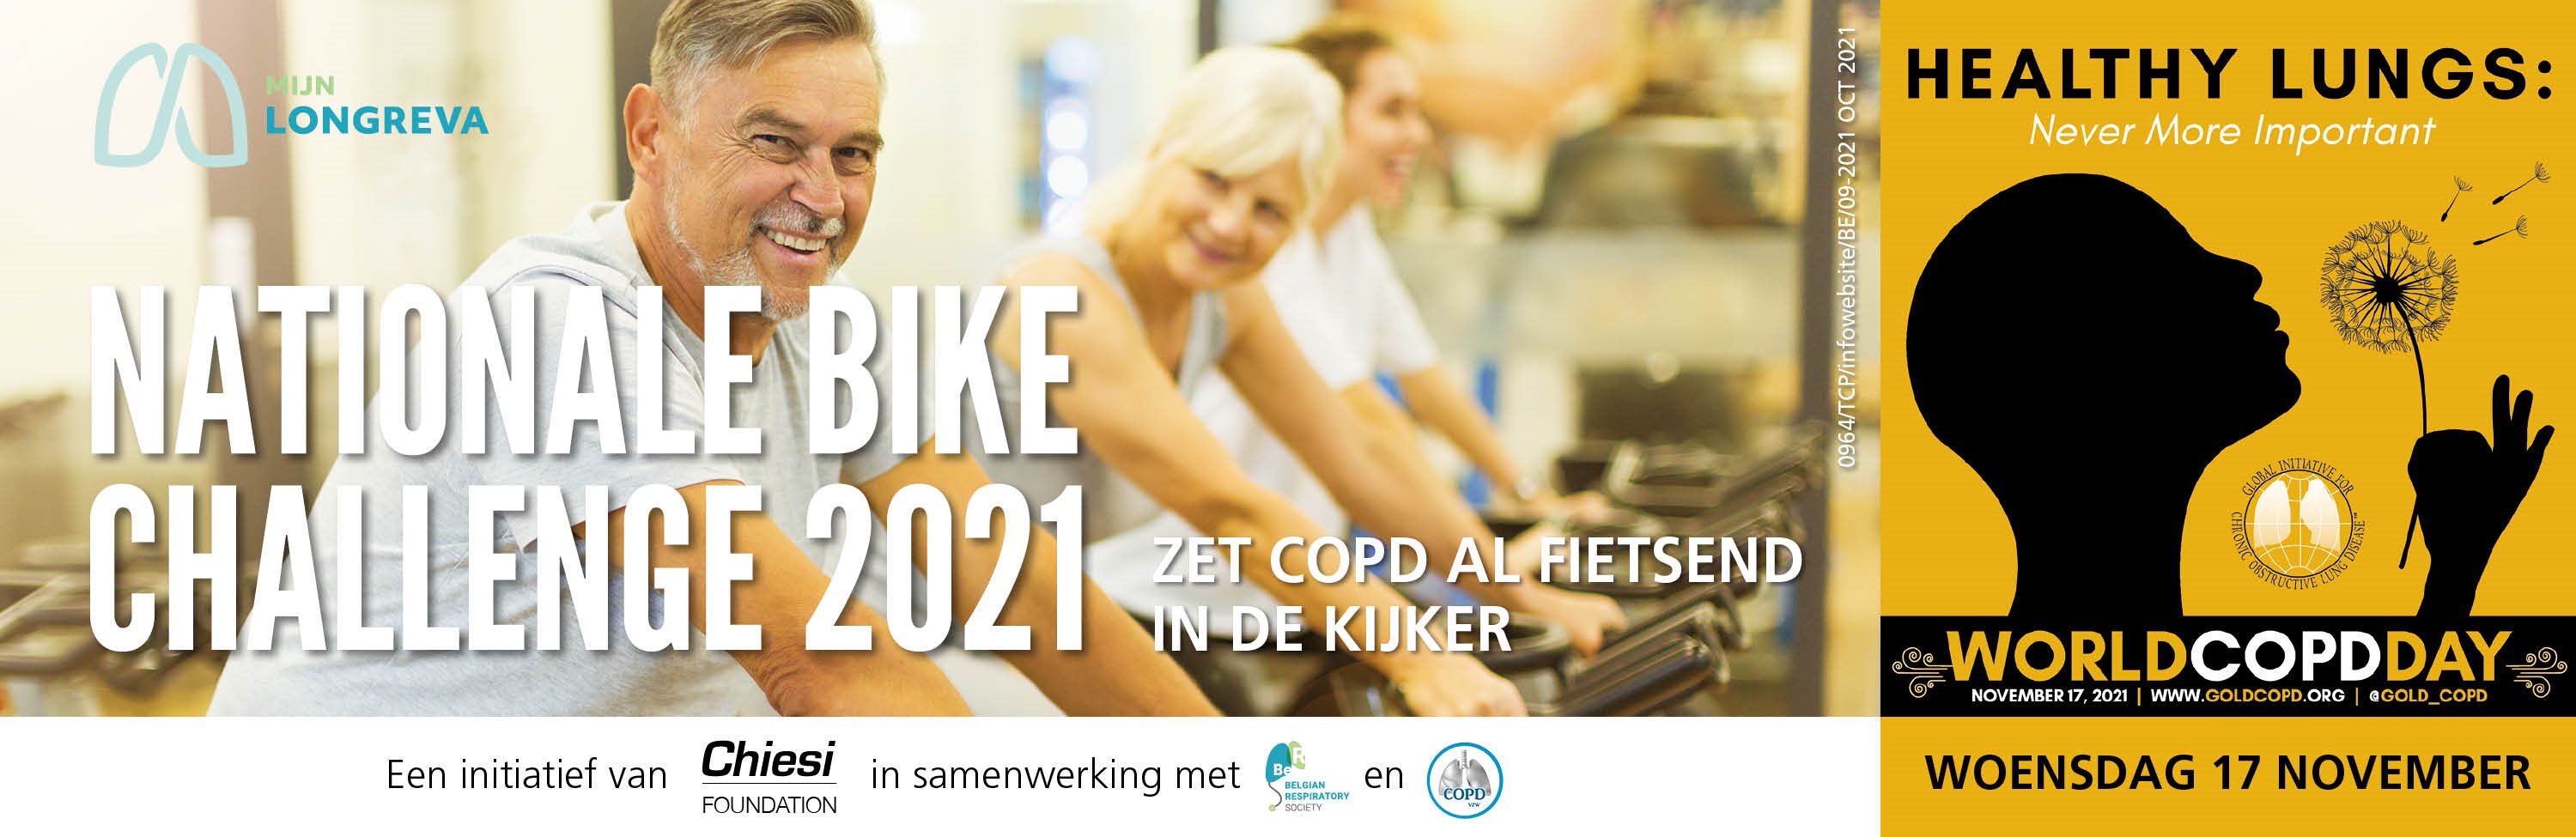 COPD bike challenge 2021